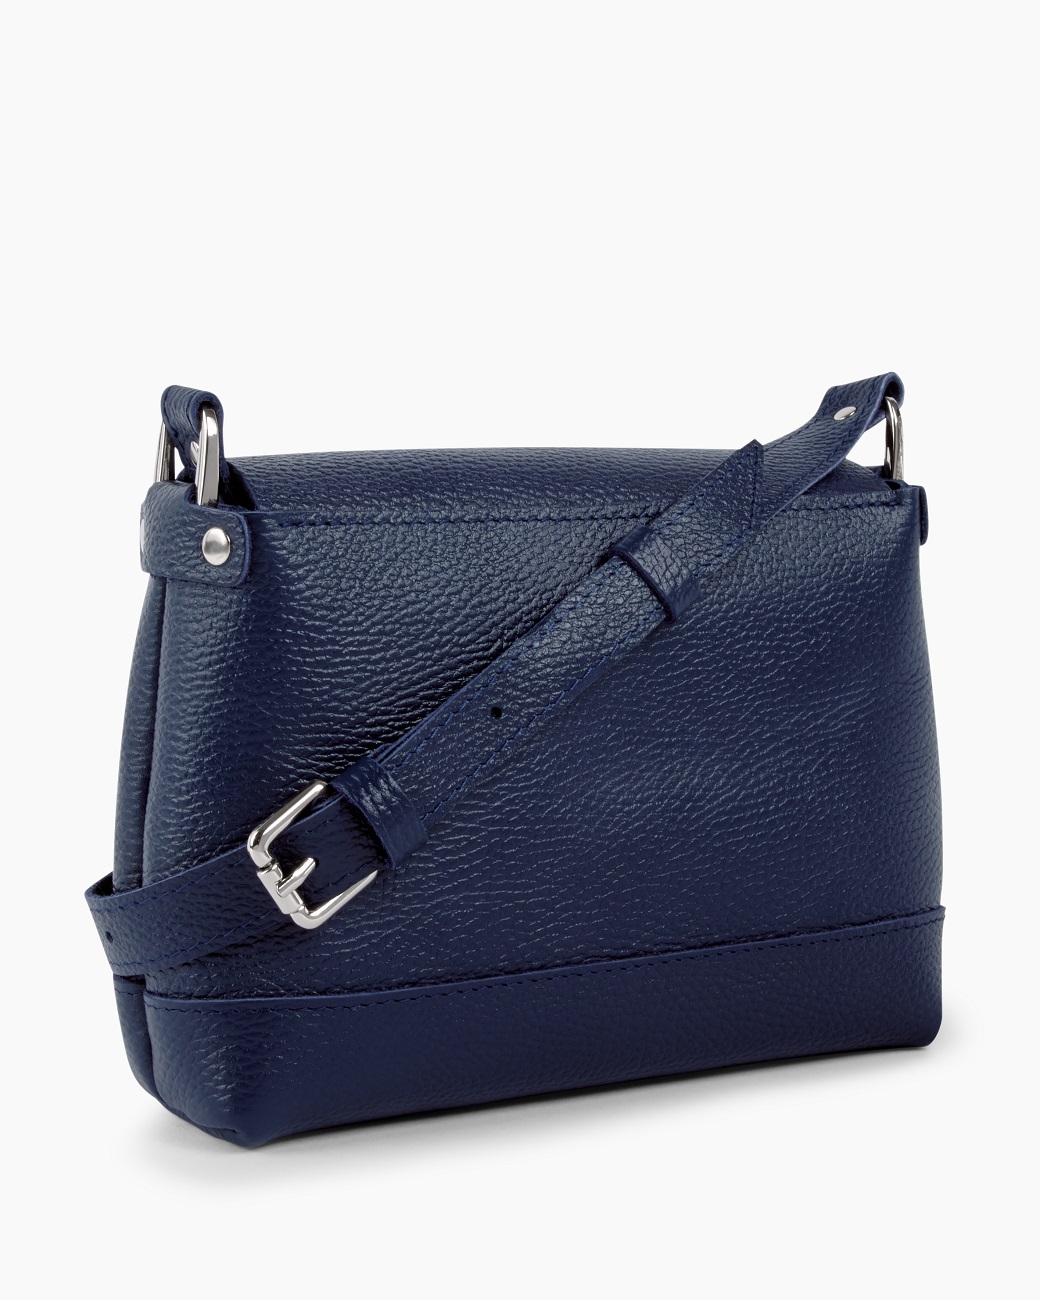 Женская сумка через плечо из натуральной кожи синяя A003 sapphire grain